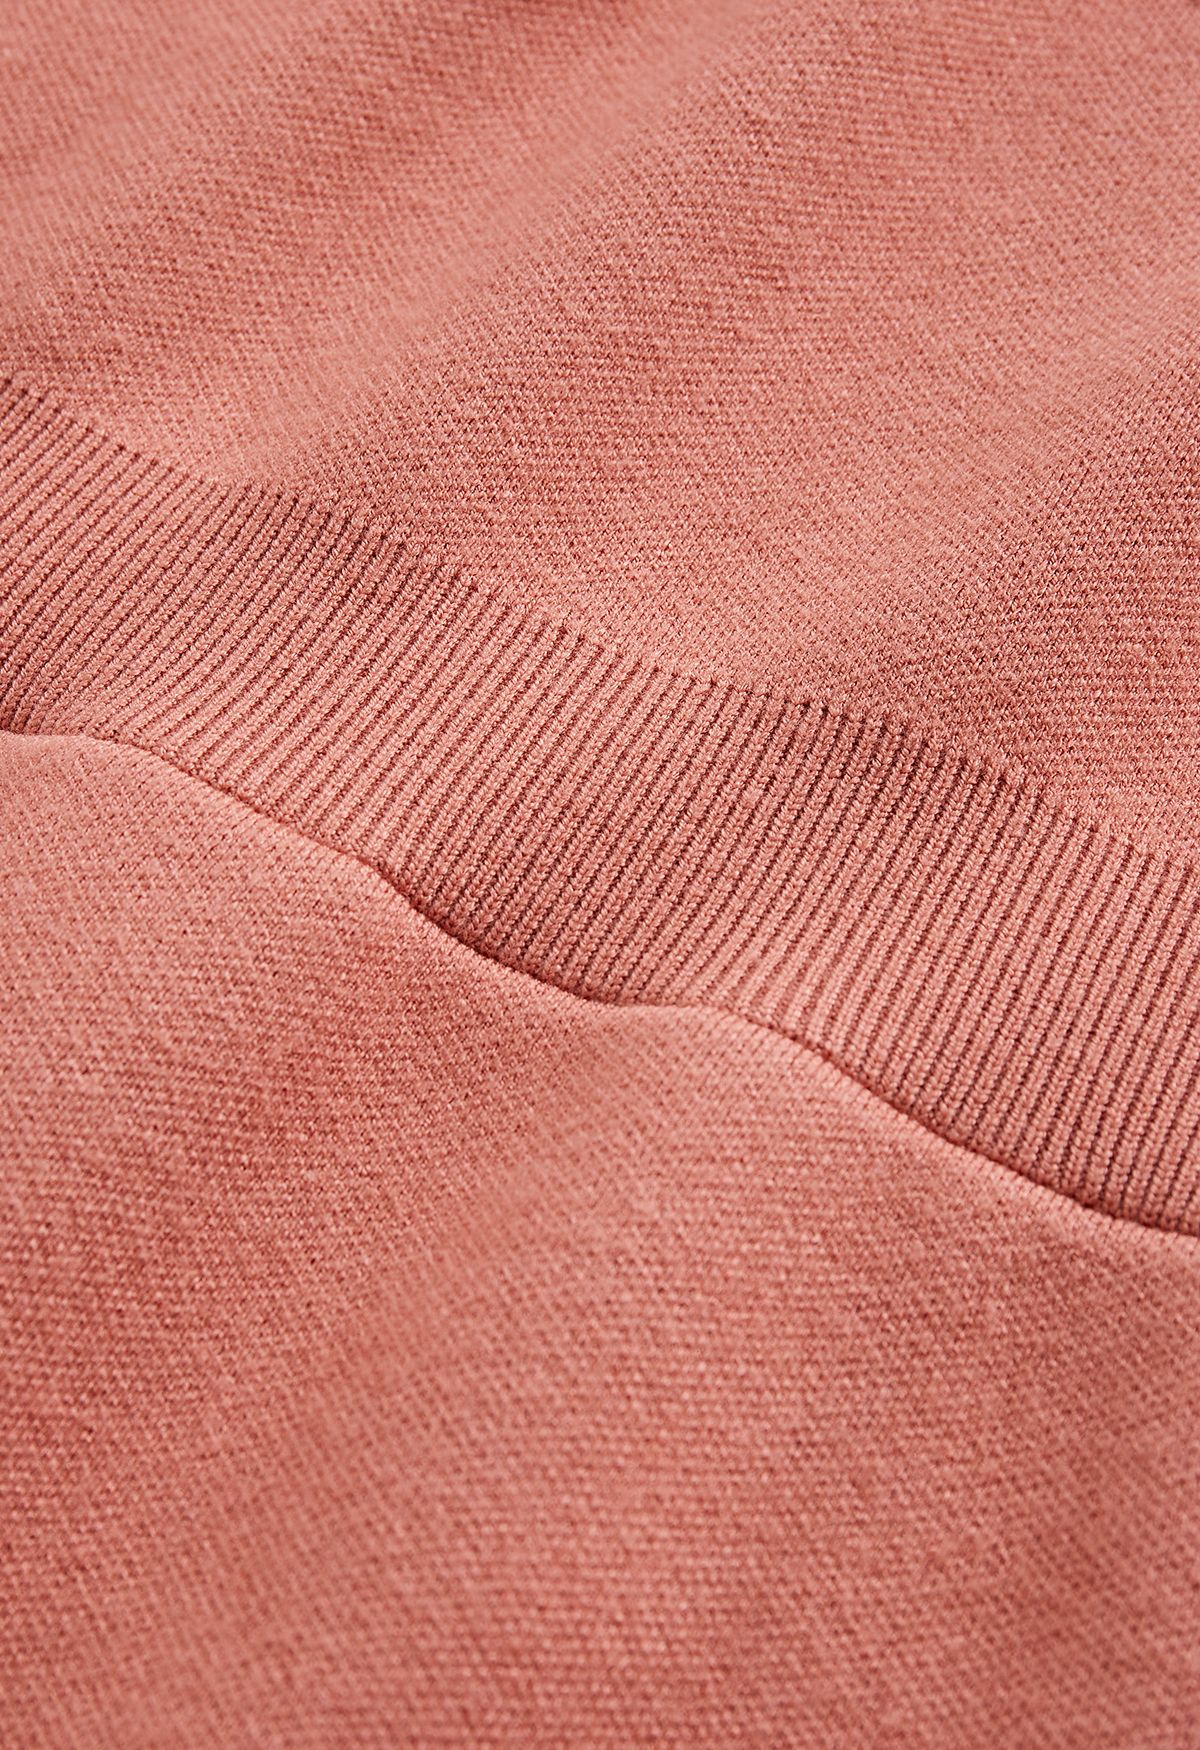 فستان متوسط الطول منسوج بحاشية متقاطعة وياقة وهمية باللون المرجاني